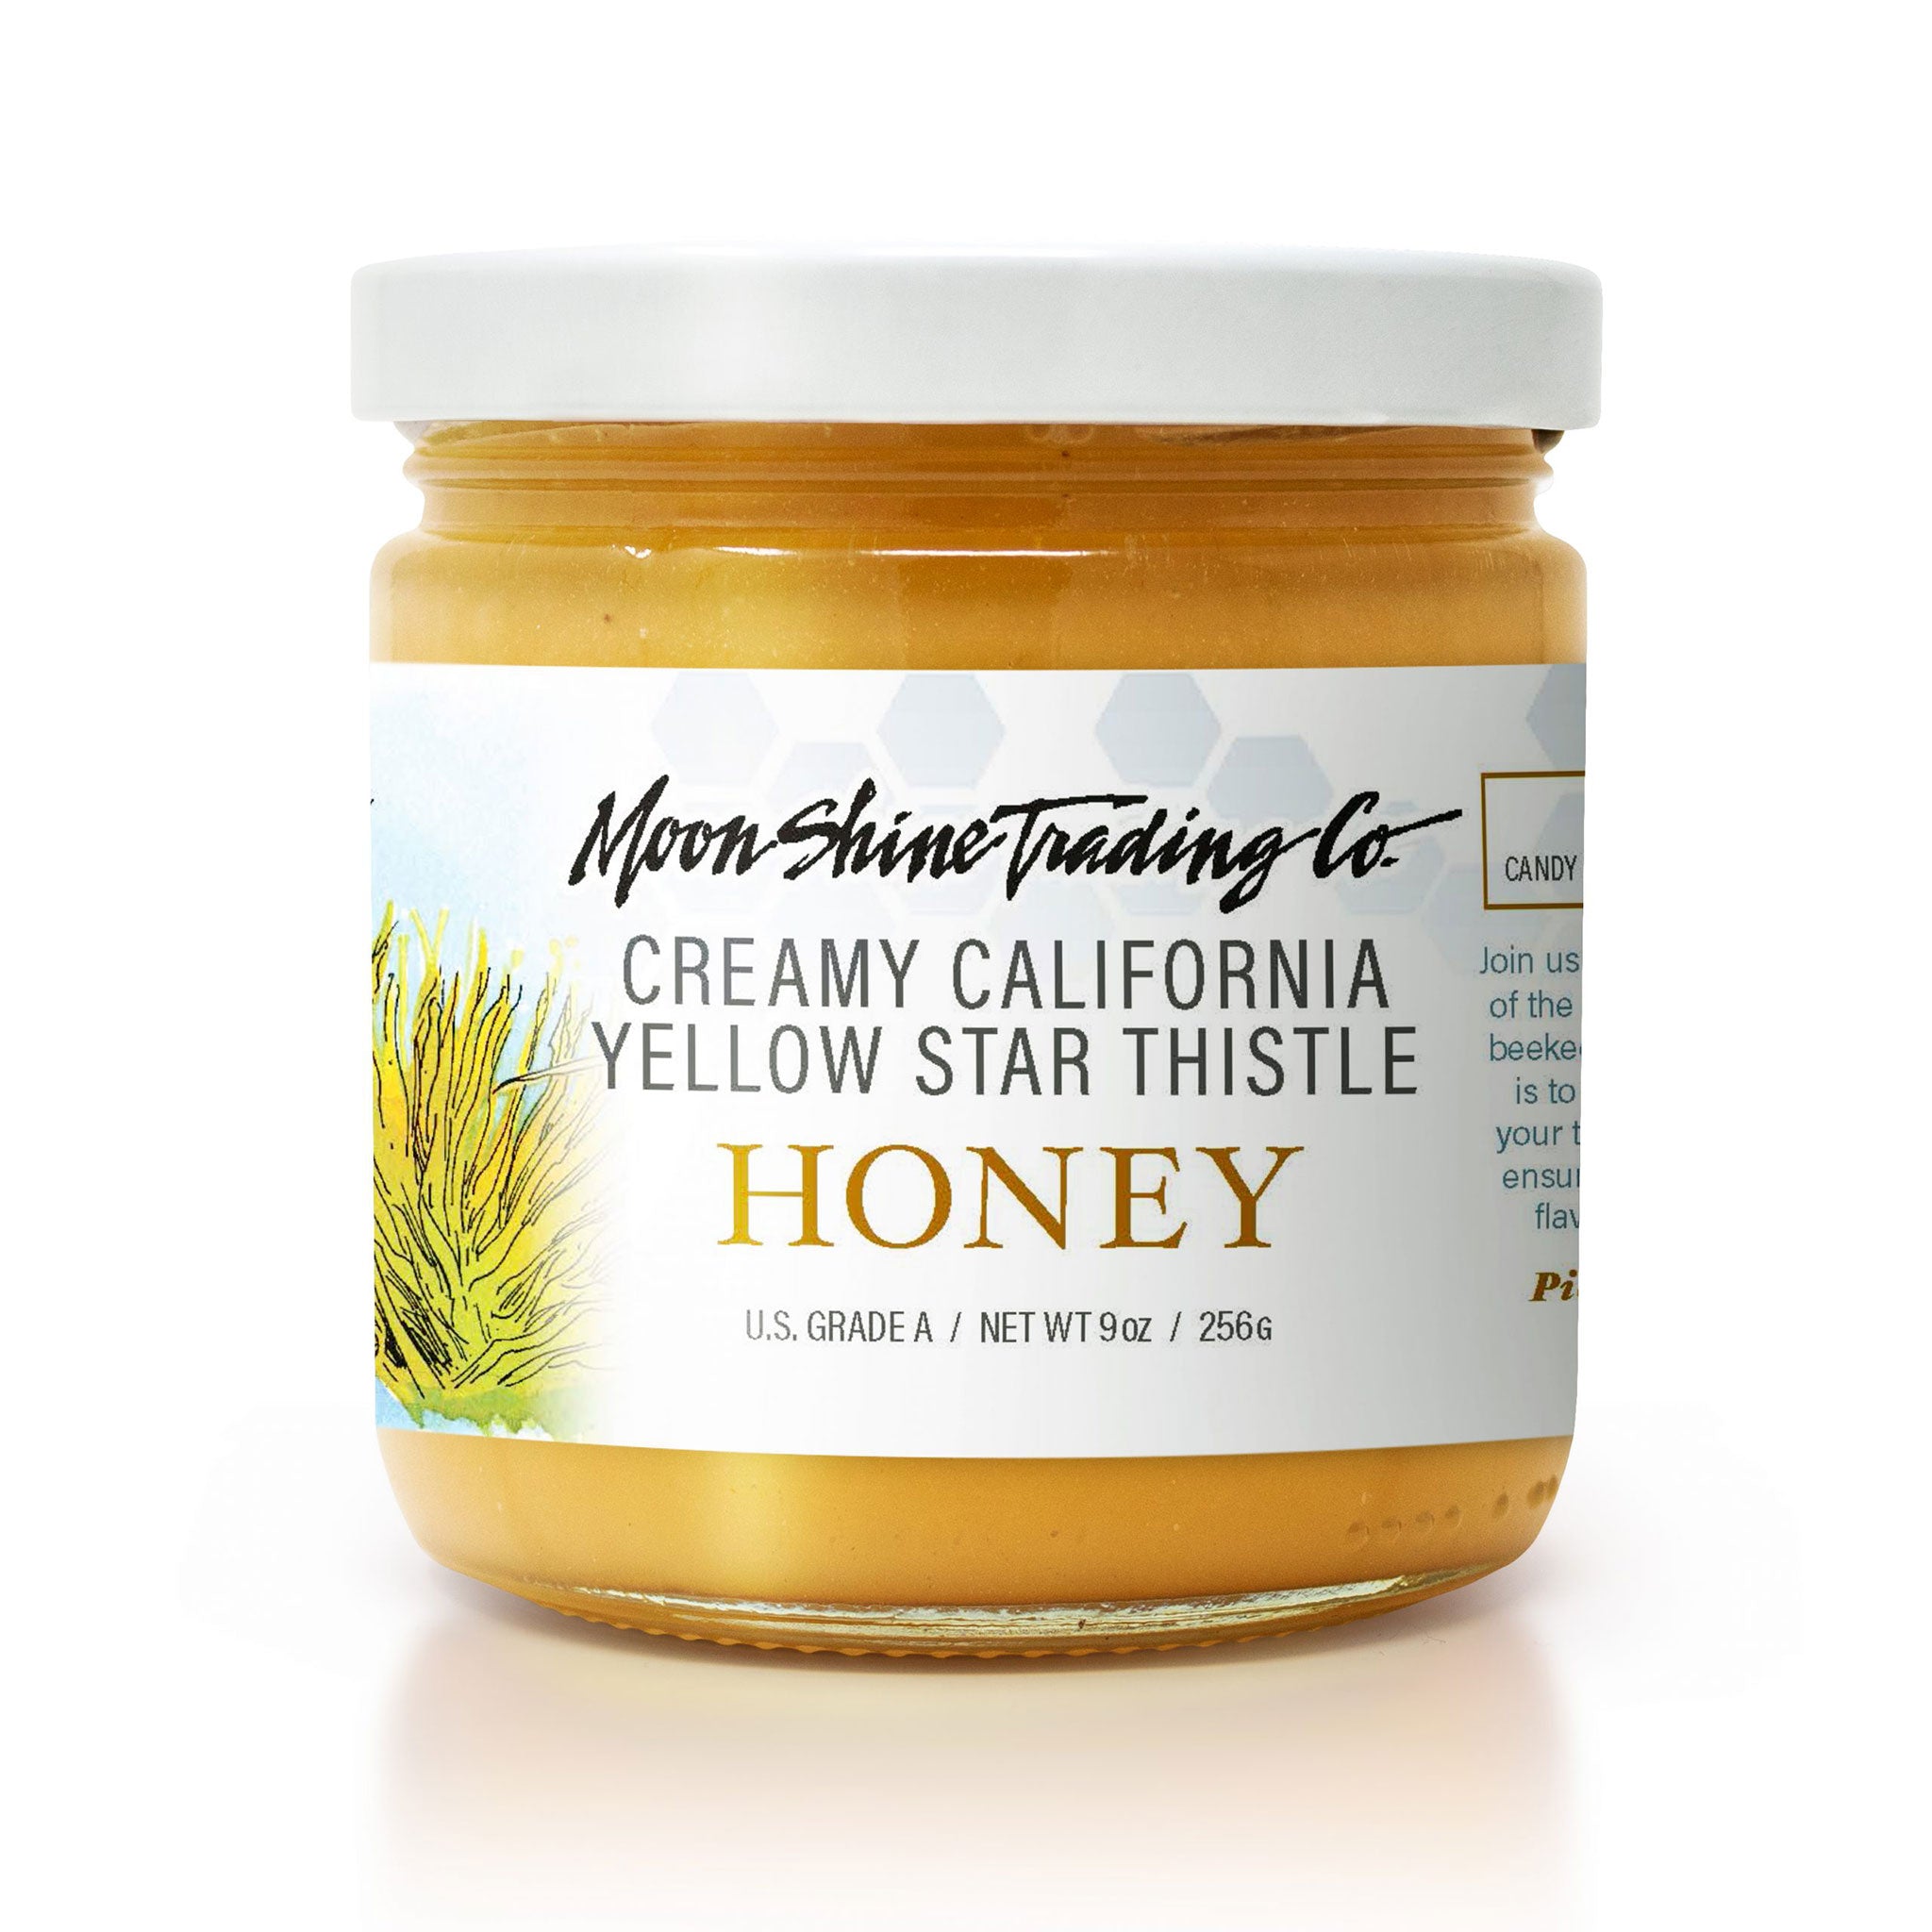 California Yellow Star Thistle Honey (Creamy)